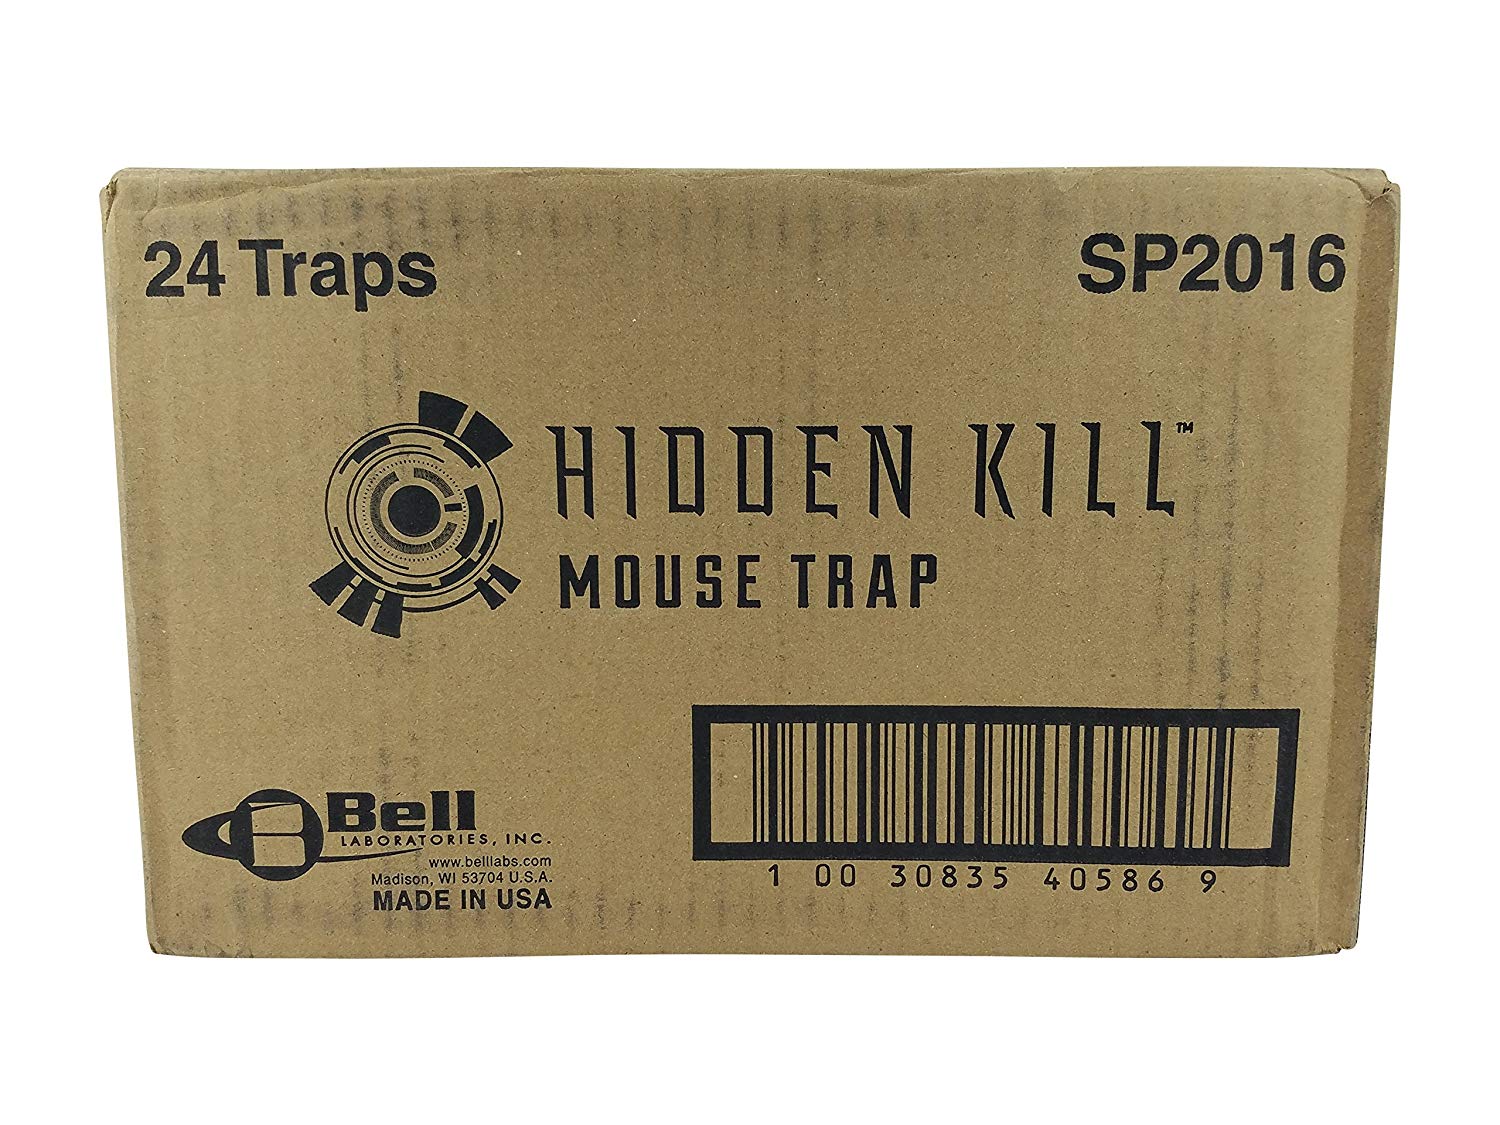 https://pestcontrolsupplies.com/wp-content/uploads/2019/01/trapper-hidden-kill-mouse-trap-case.jpg